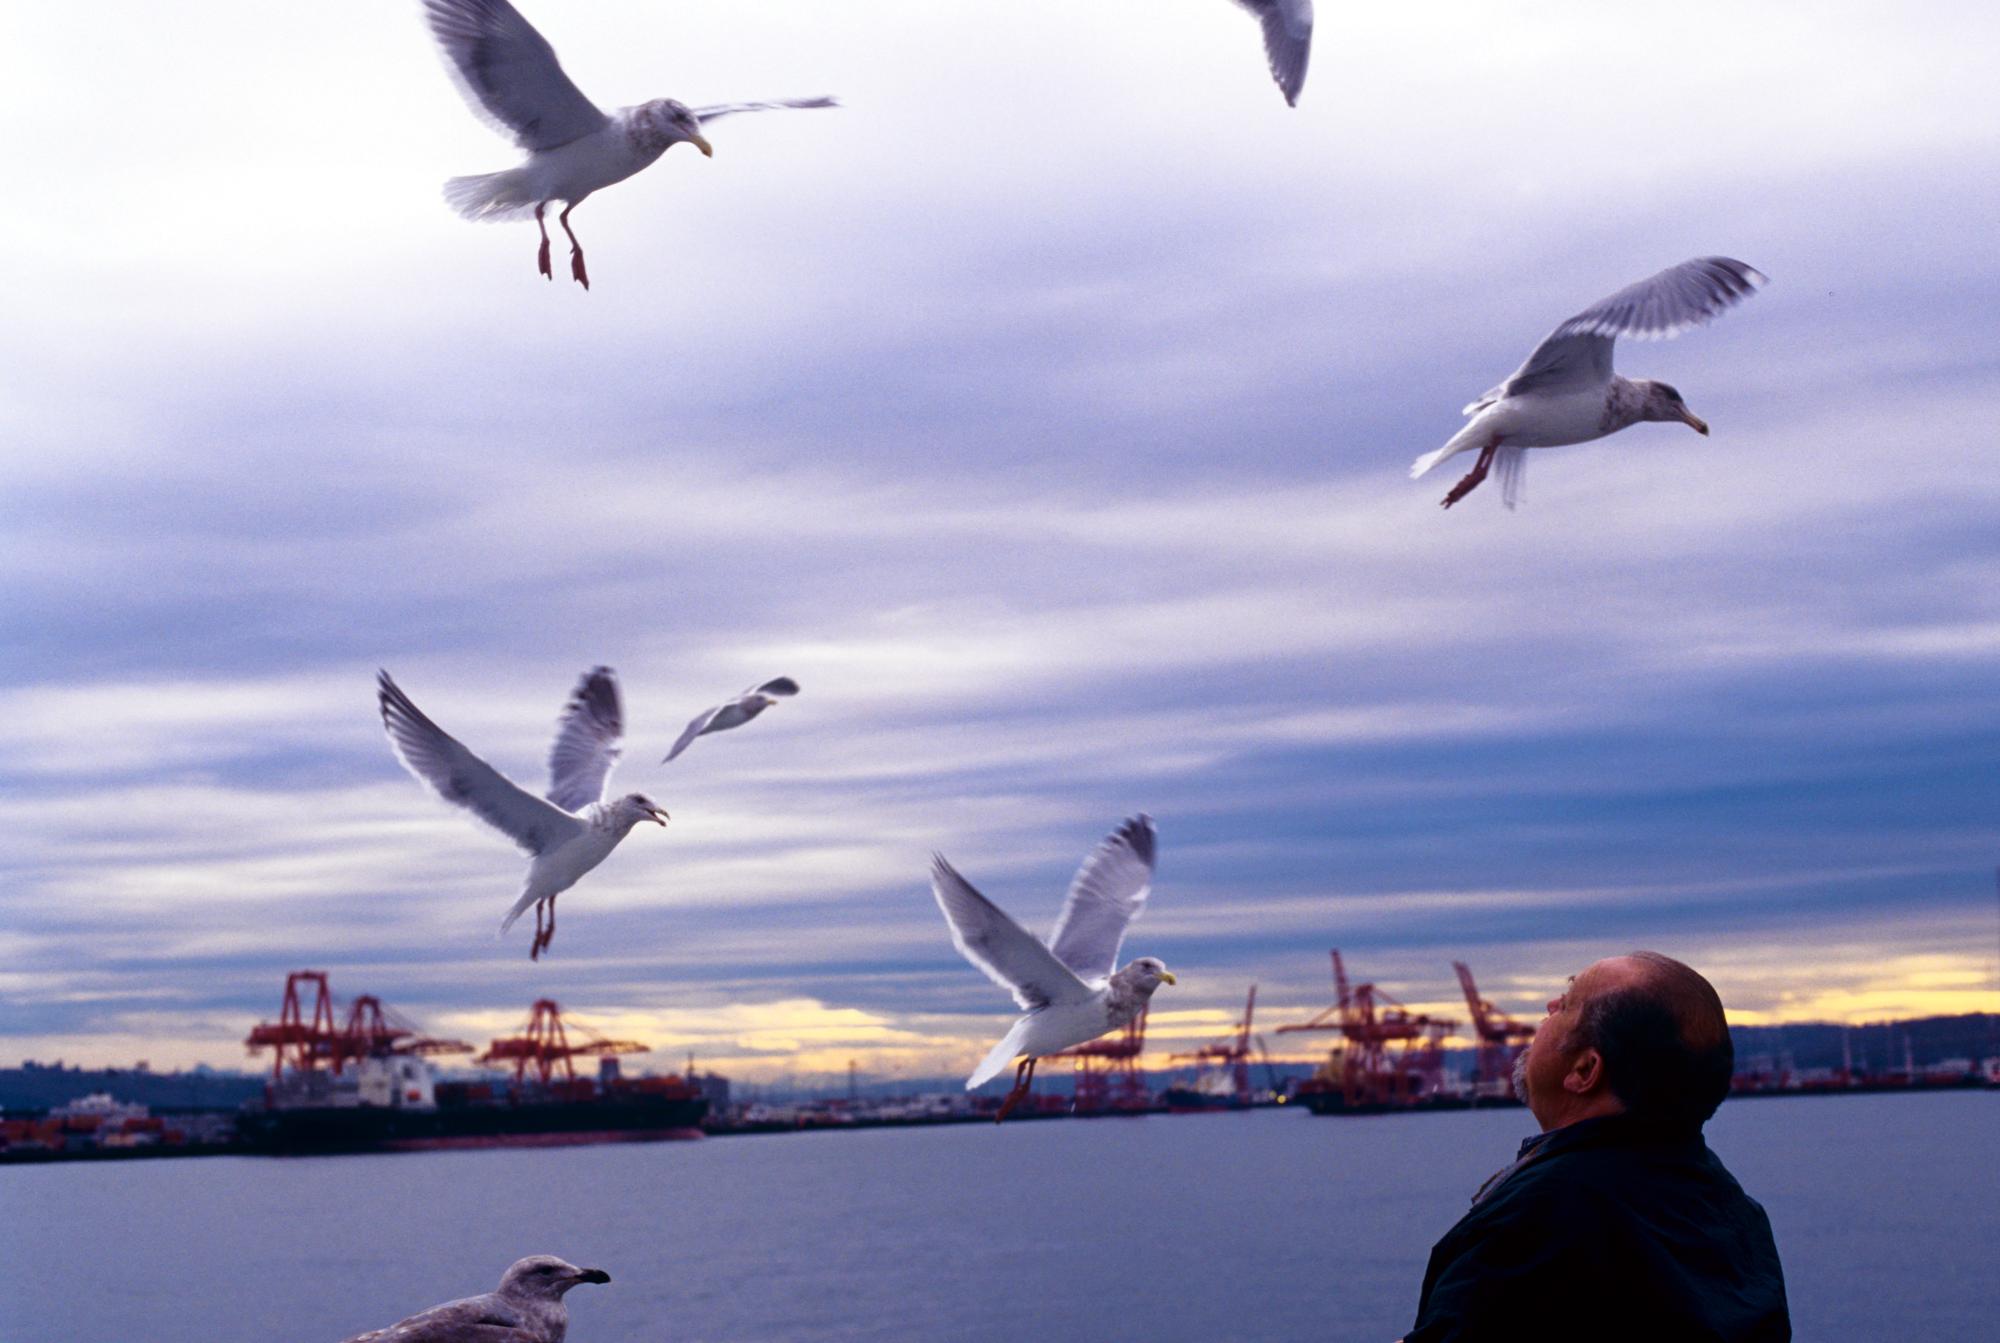 Seattle (1995) - Seagulls